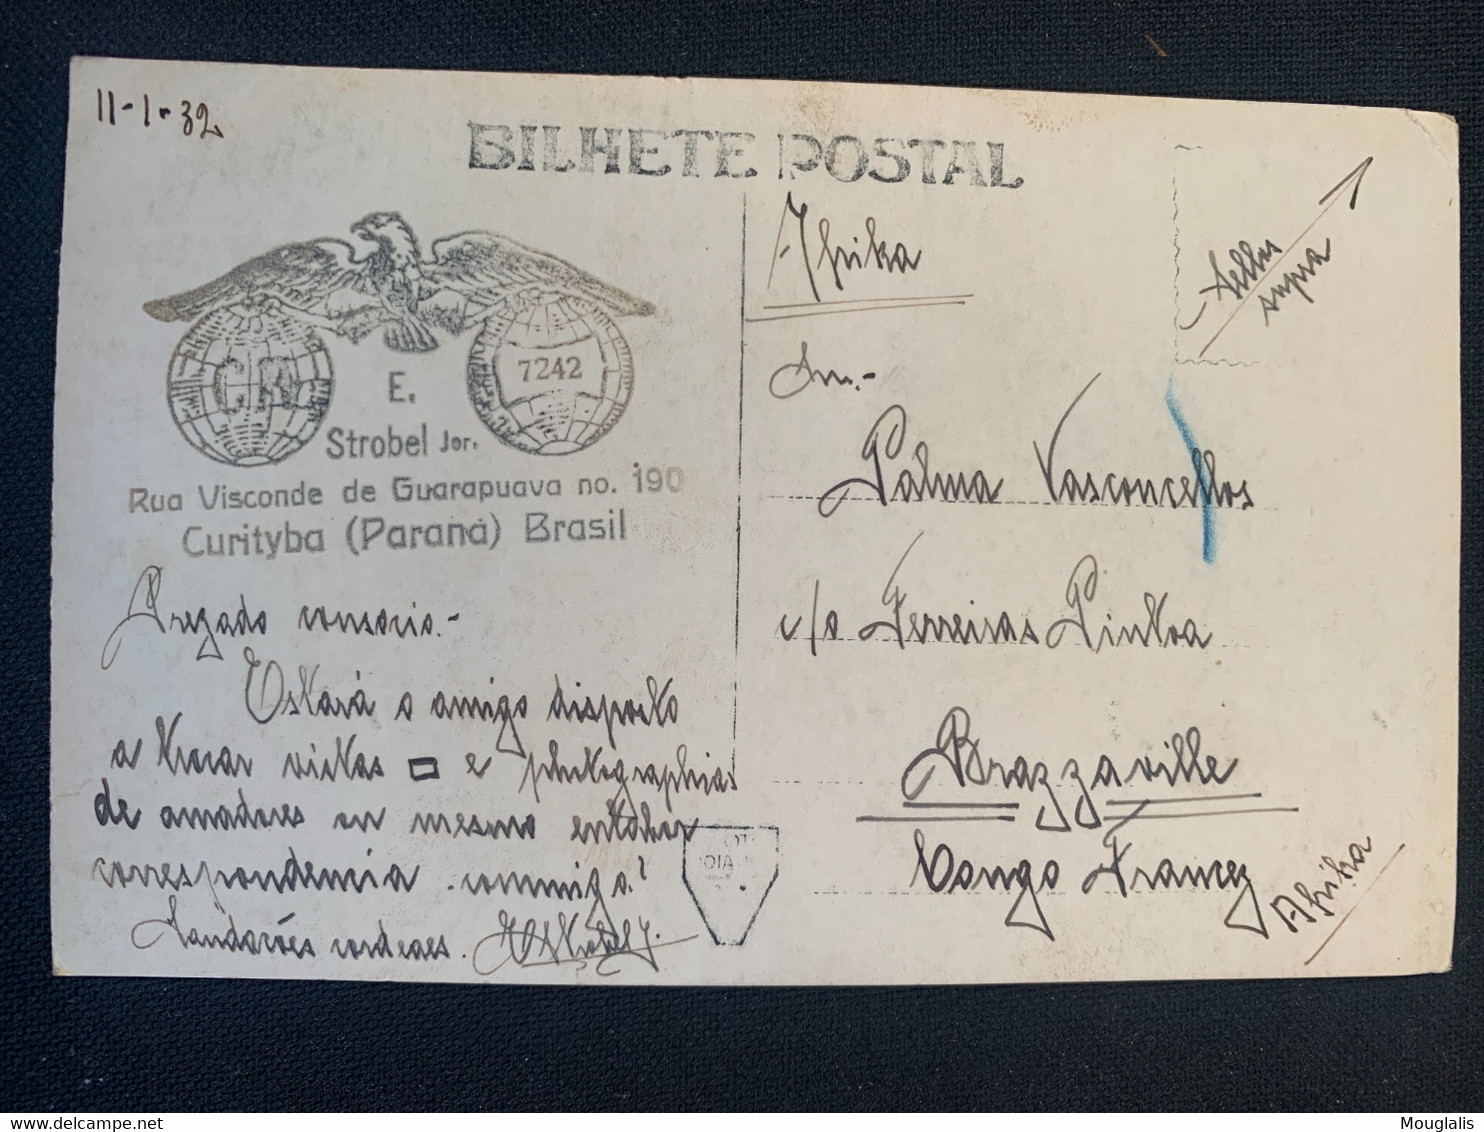 Carte Postale 11/02/1932 Brésil Vers Brazzaville Cascades Salto Iguassu ( San Martin) - Curitiba